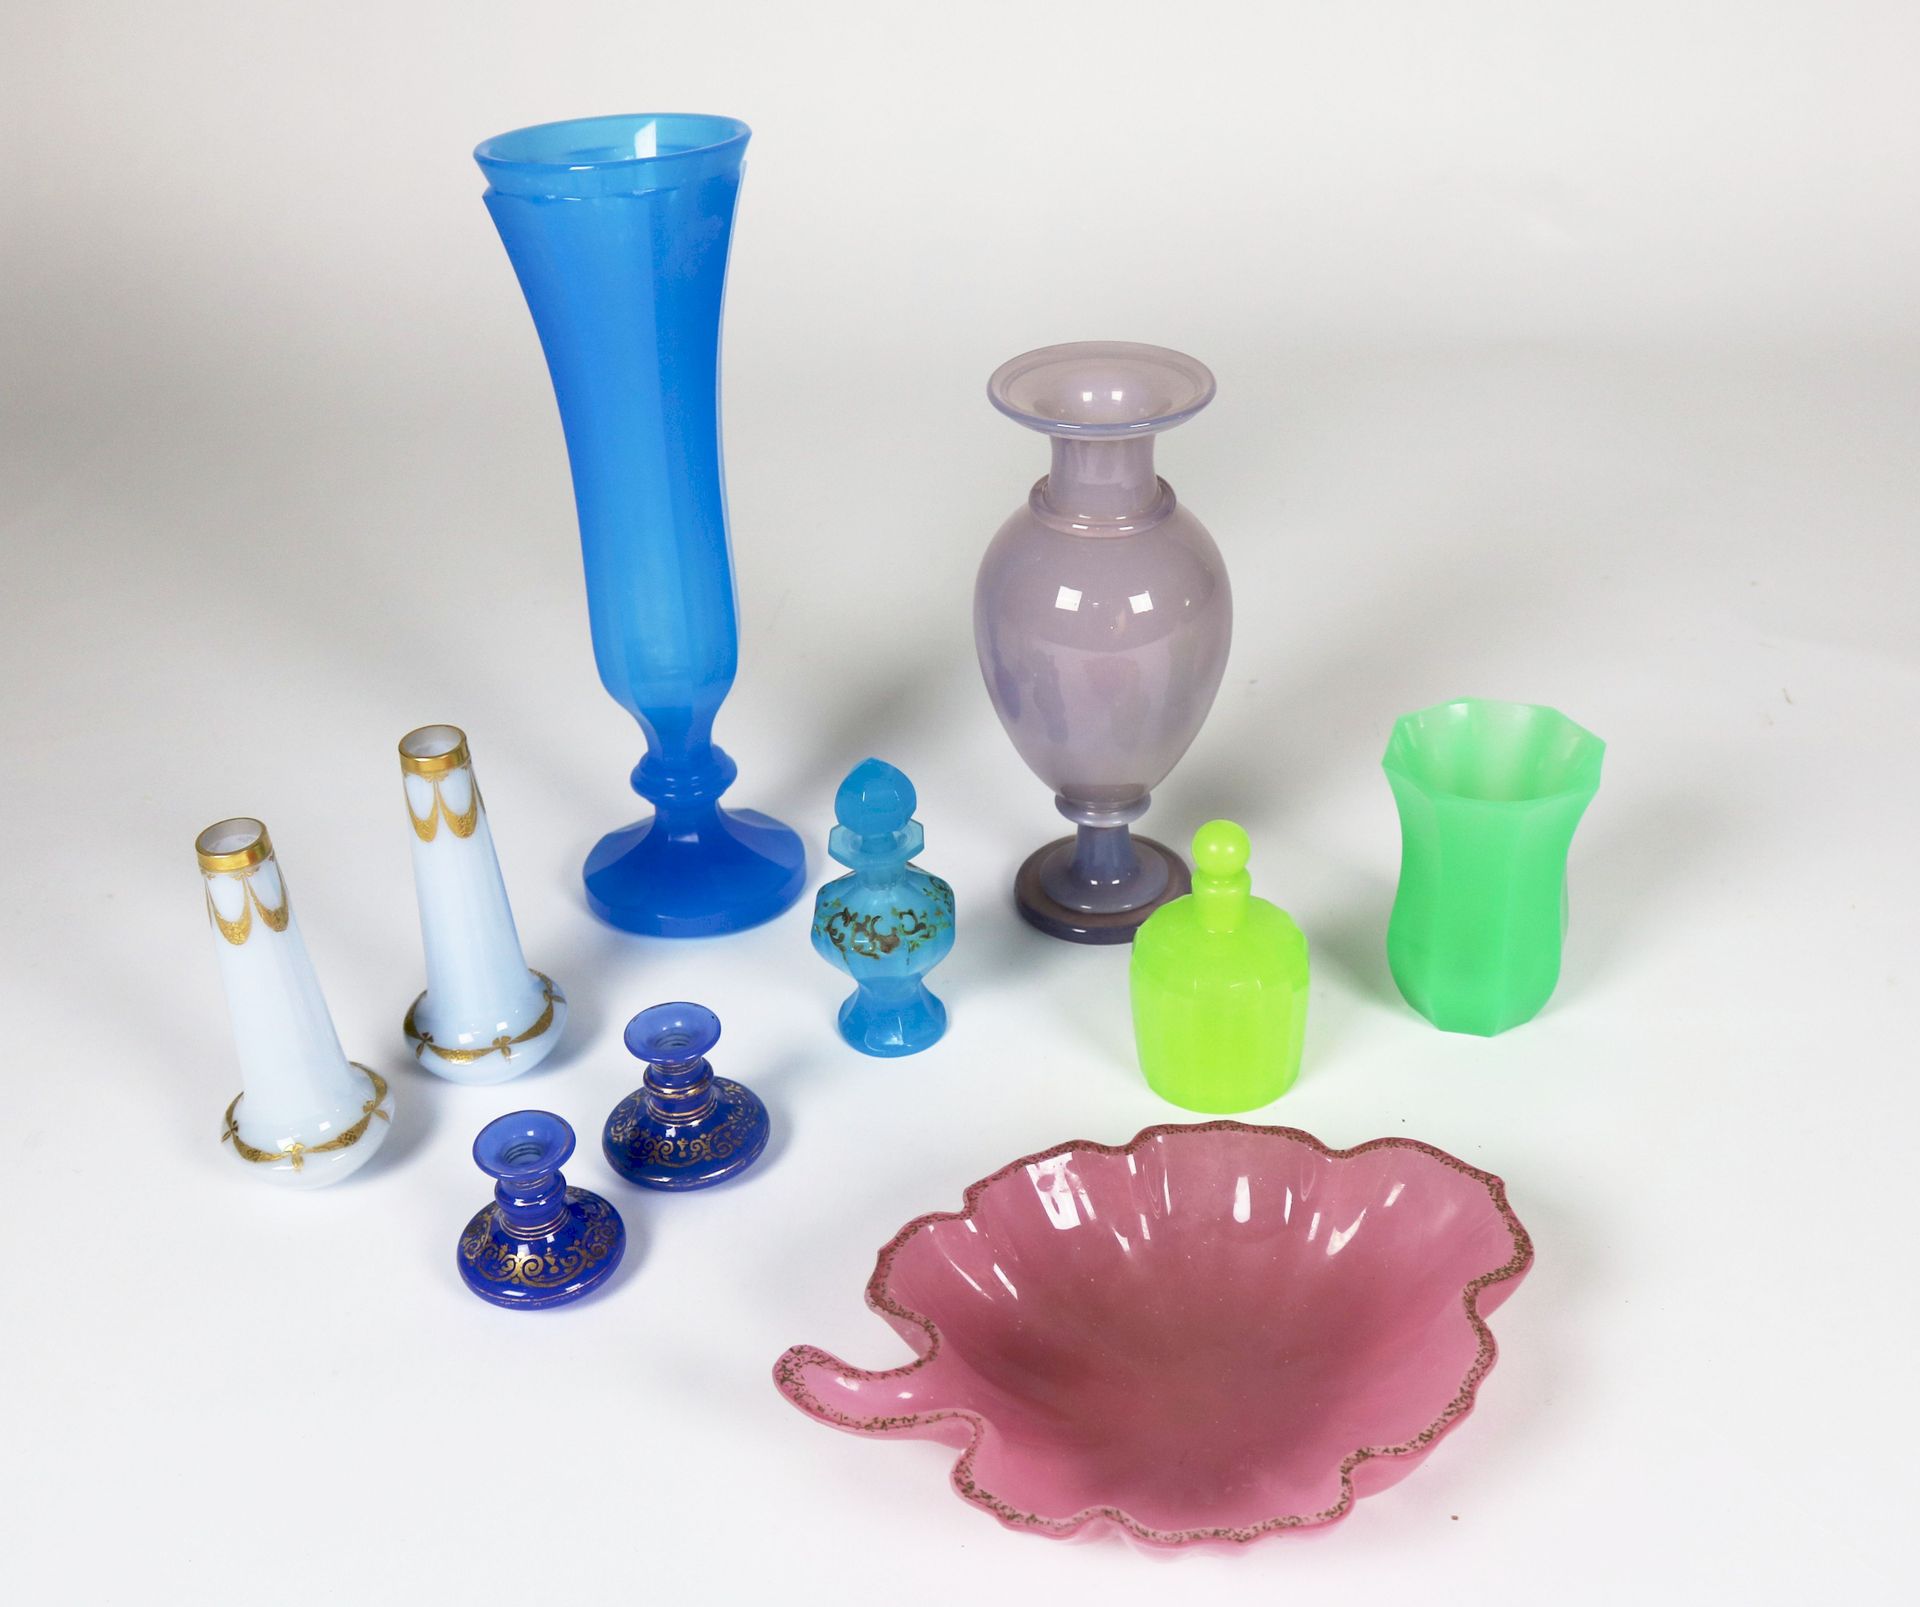 Null 乳白色玻璃杯系列



包括一个大的蓝色切面花瓶，一个绿色切面花瓶，一个绿色切面瓶，一个粉红色的柱形花瓶，一对白色和金色的花瓶，一对蓝色和金色的小花瓶&hellip;